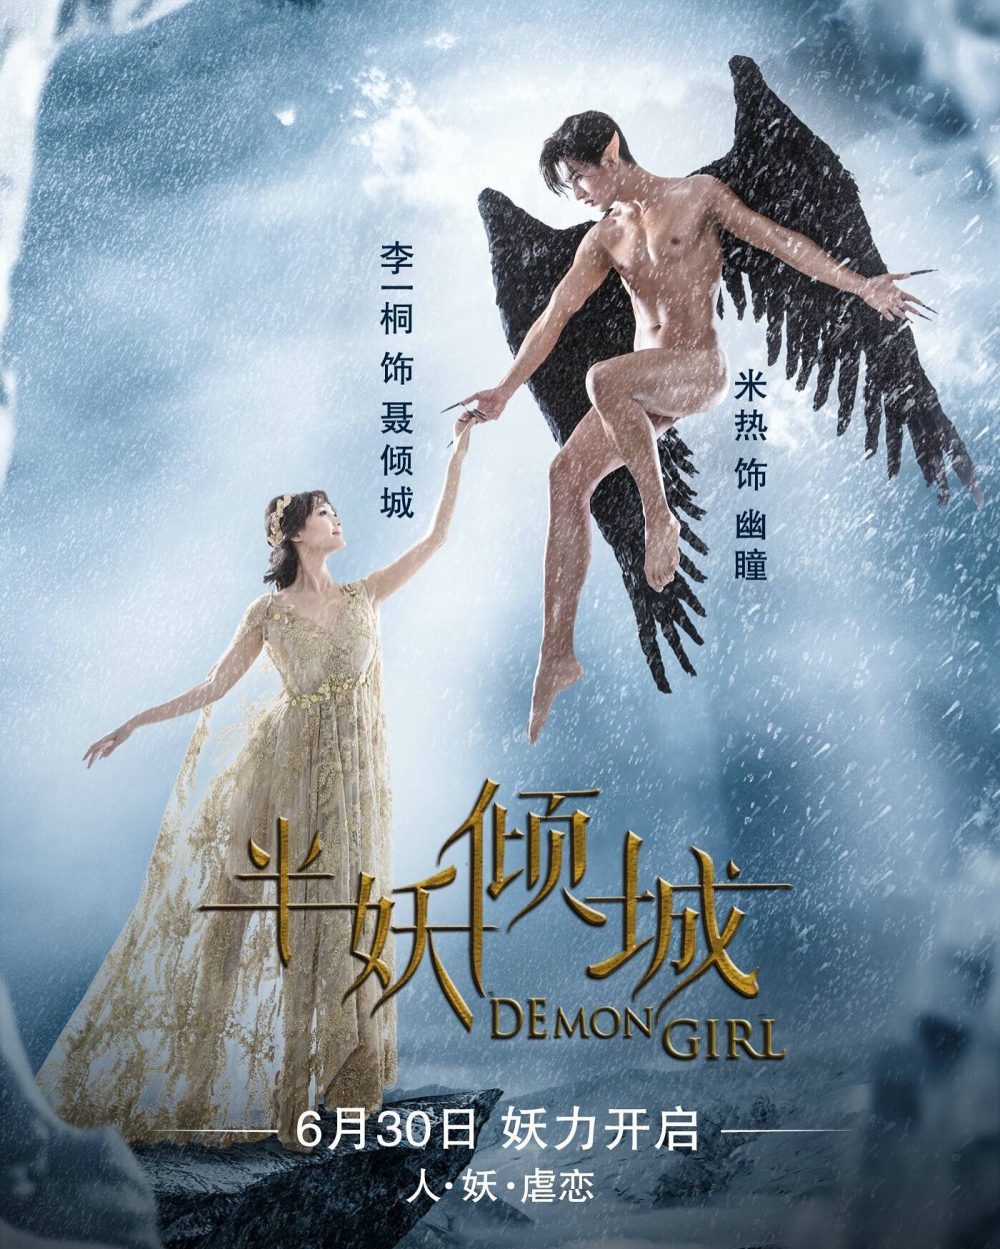 Phim Lý Nhất Đồng đóng: Bán yêu Khuynh Thành - Demon Girl (2016)